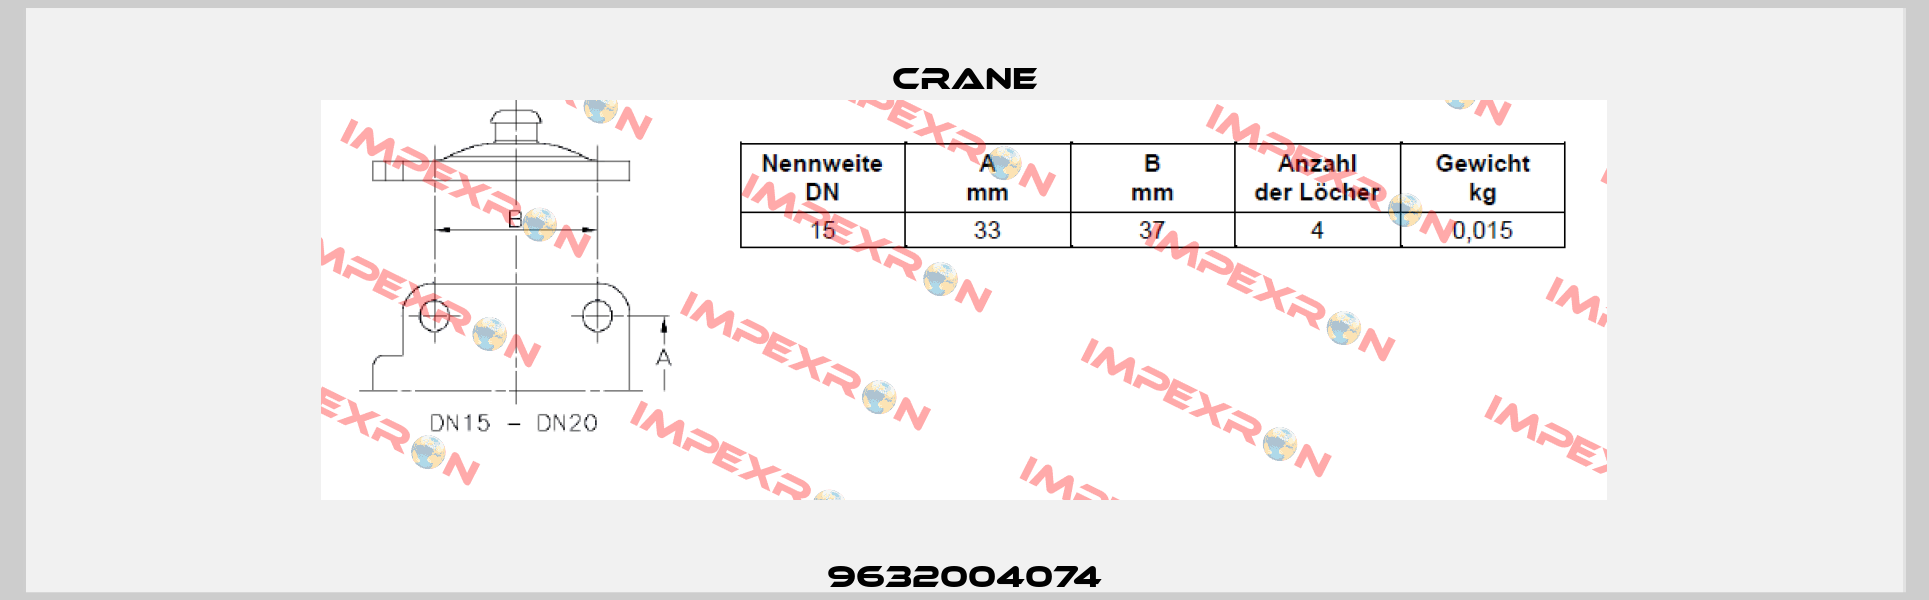 9632004074 Crane